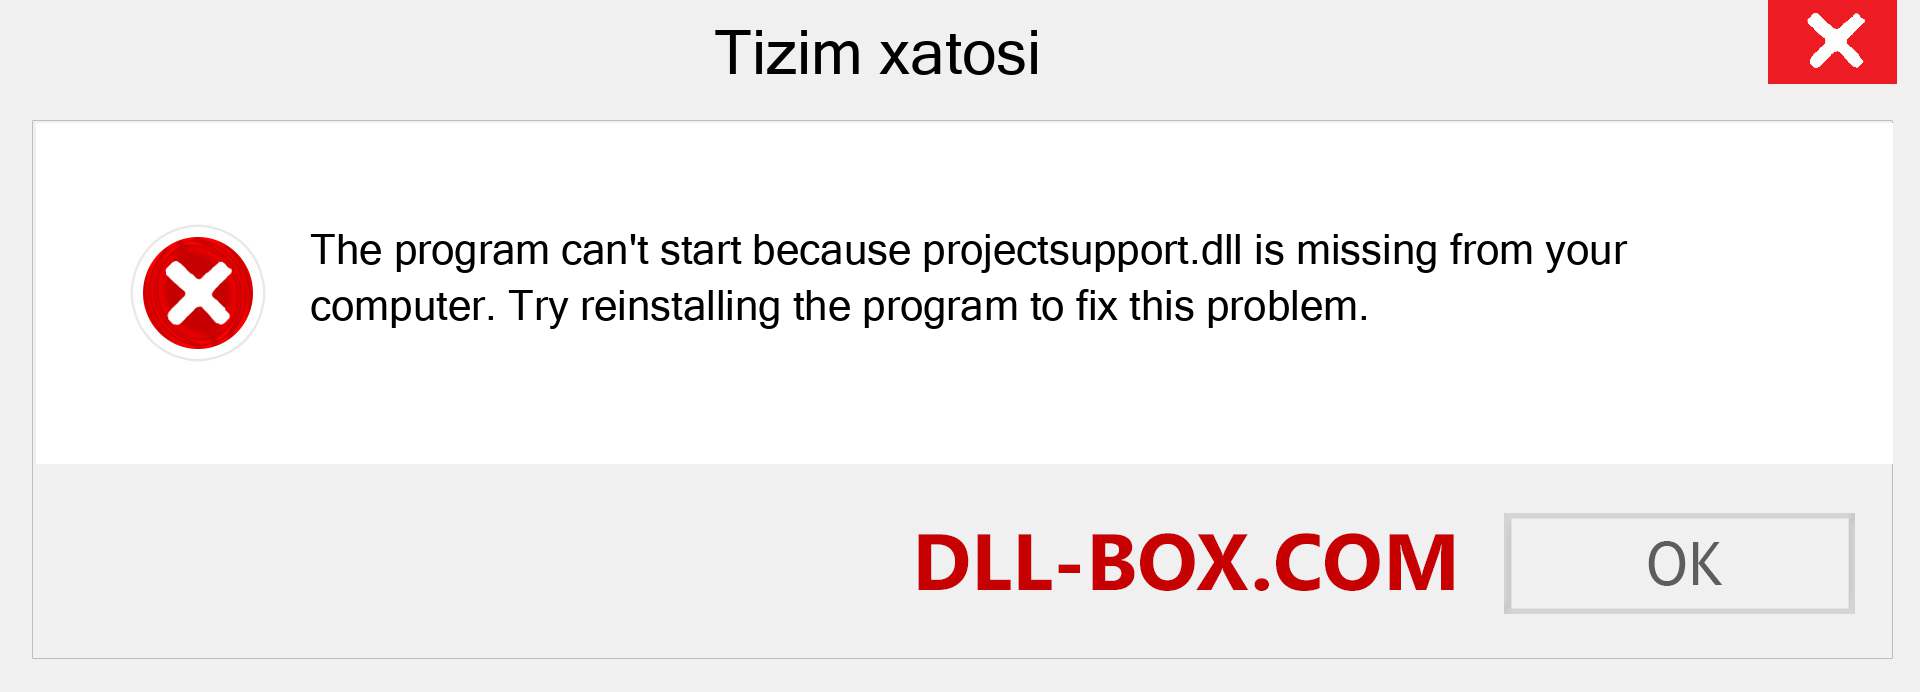 projectsupport.dll fayli yo'qolganmi?. Windows 7, 8, 10 uchun yuklab olish - Windowsda projectsupport dll etishmayotgan xatoni tuzating, rasmlar, rasmlar